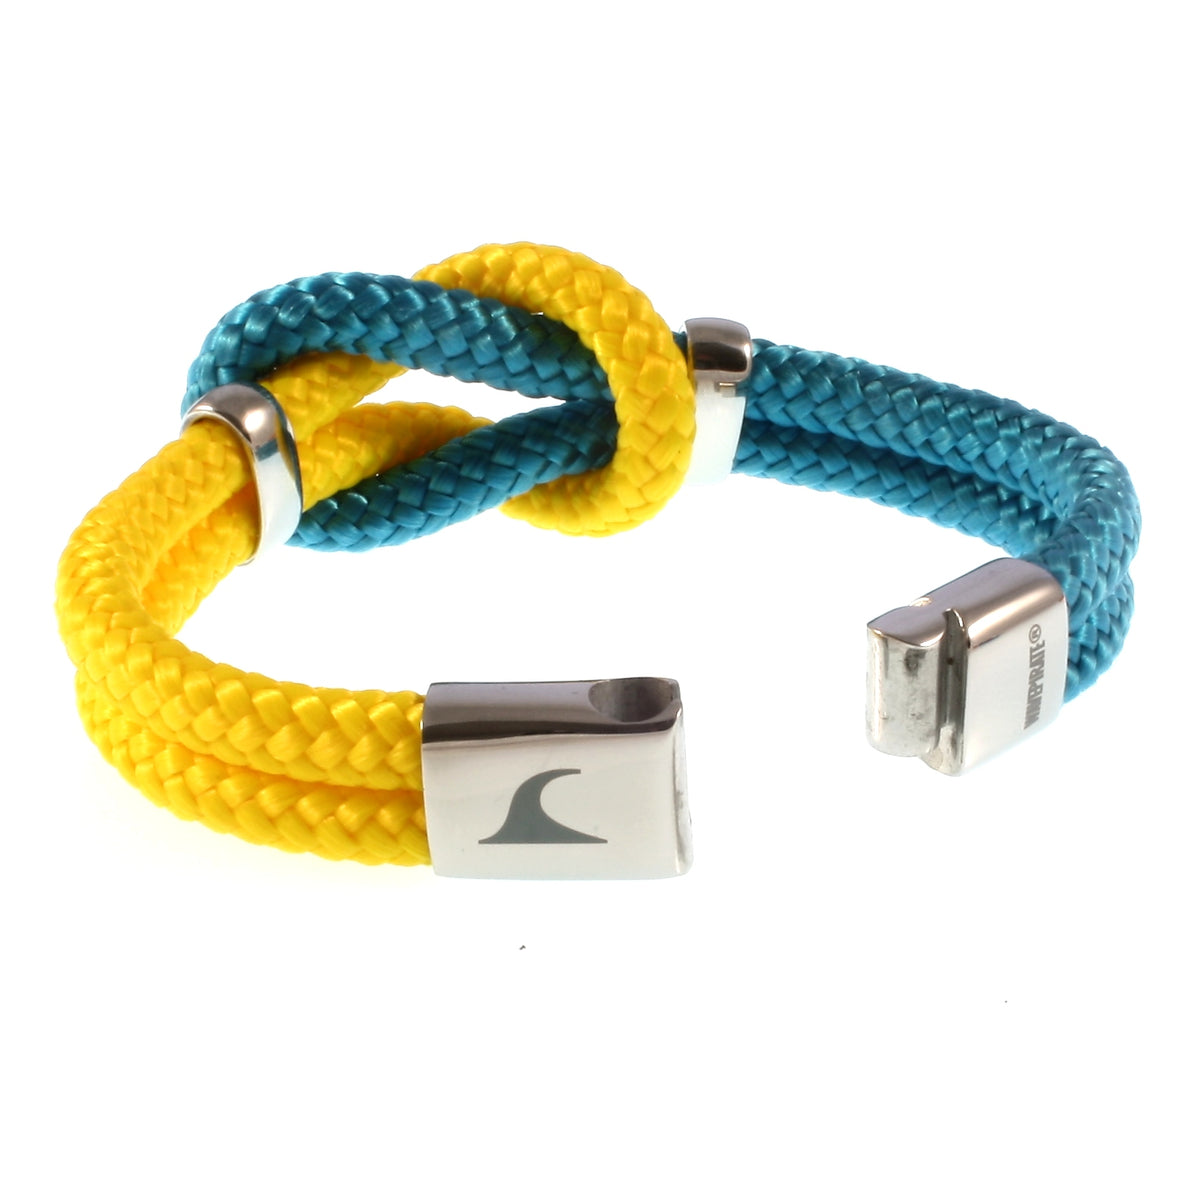 Damen-Segeltau-armband-pure-blau-gelb-silber-geflochten-Edelstahlverschluss-offen-wavepirate-shop-st